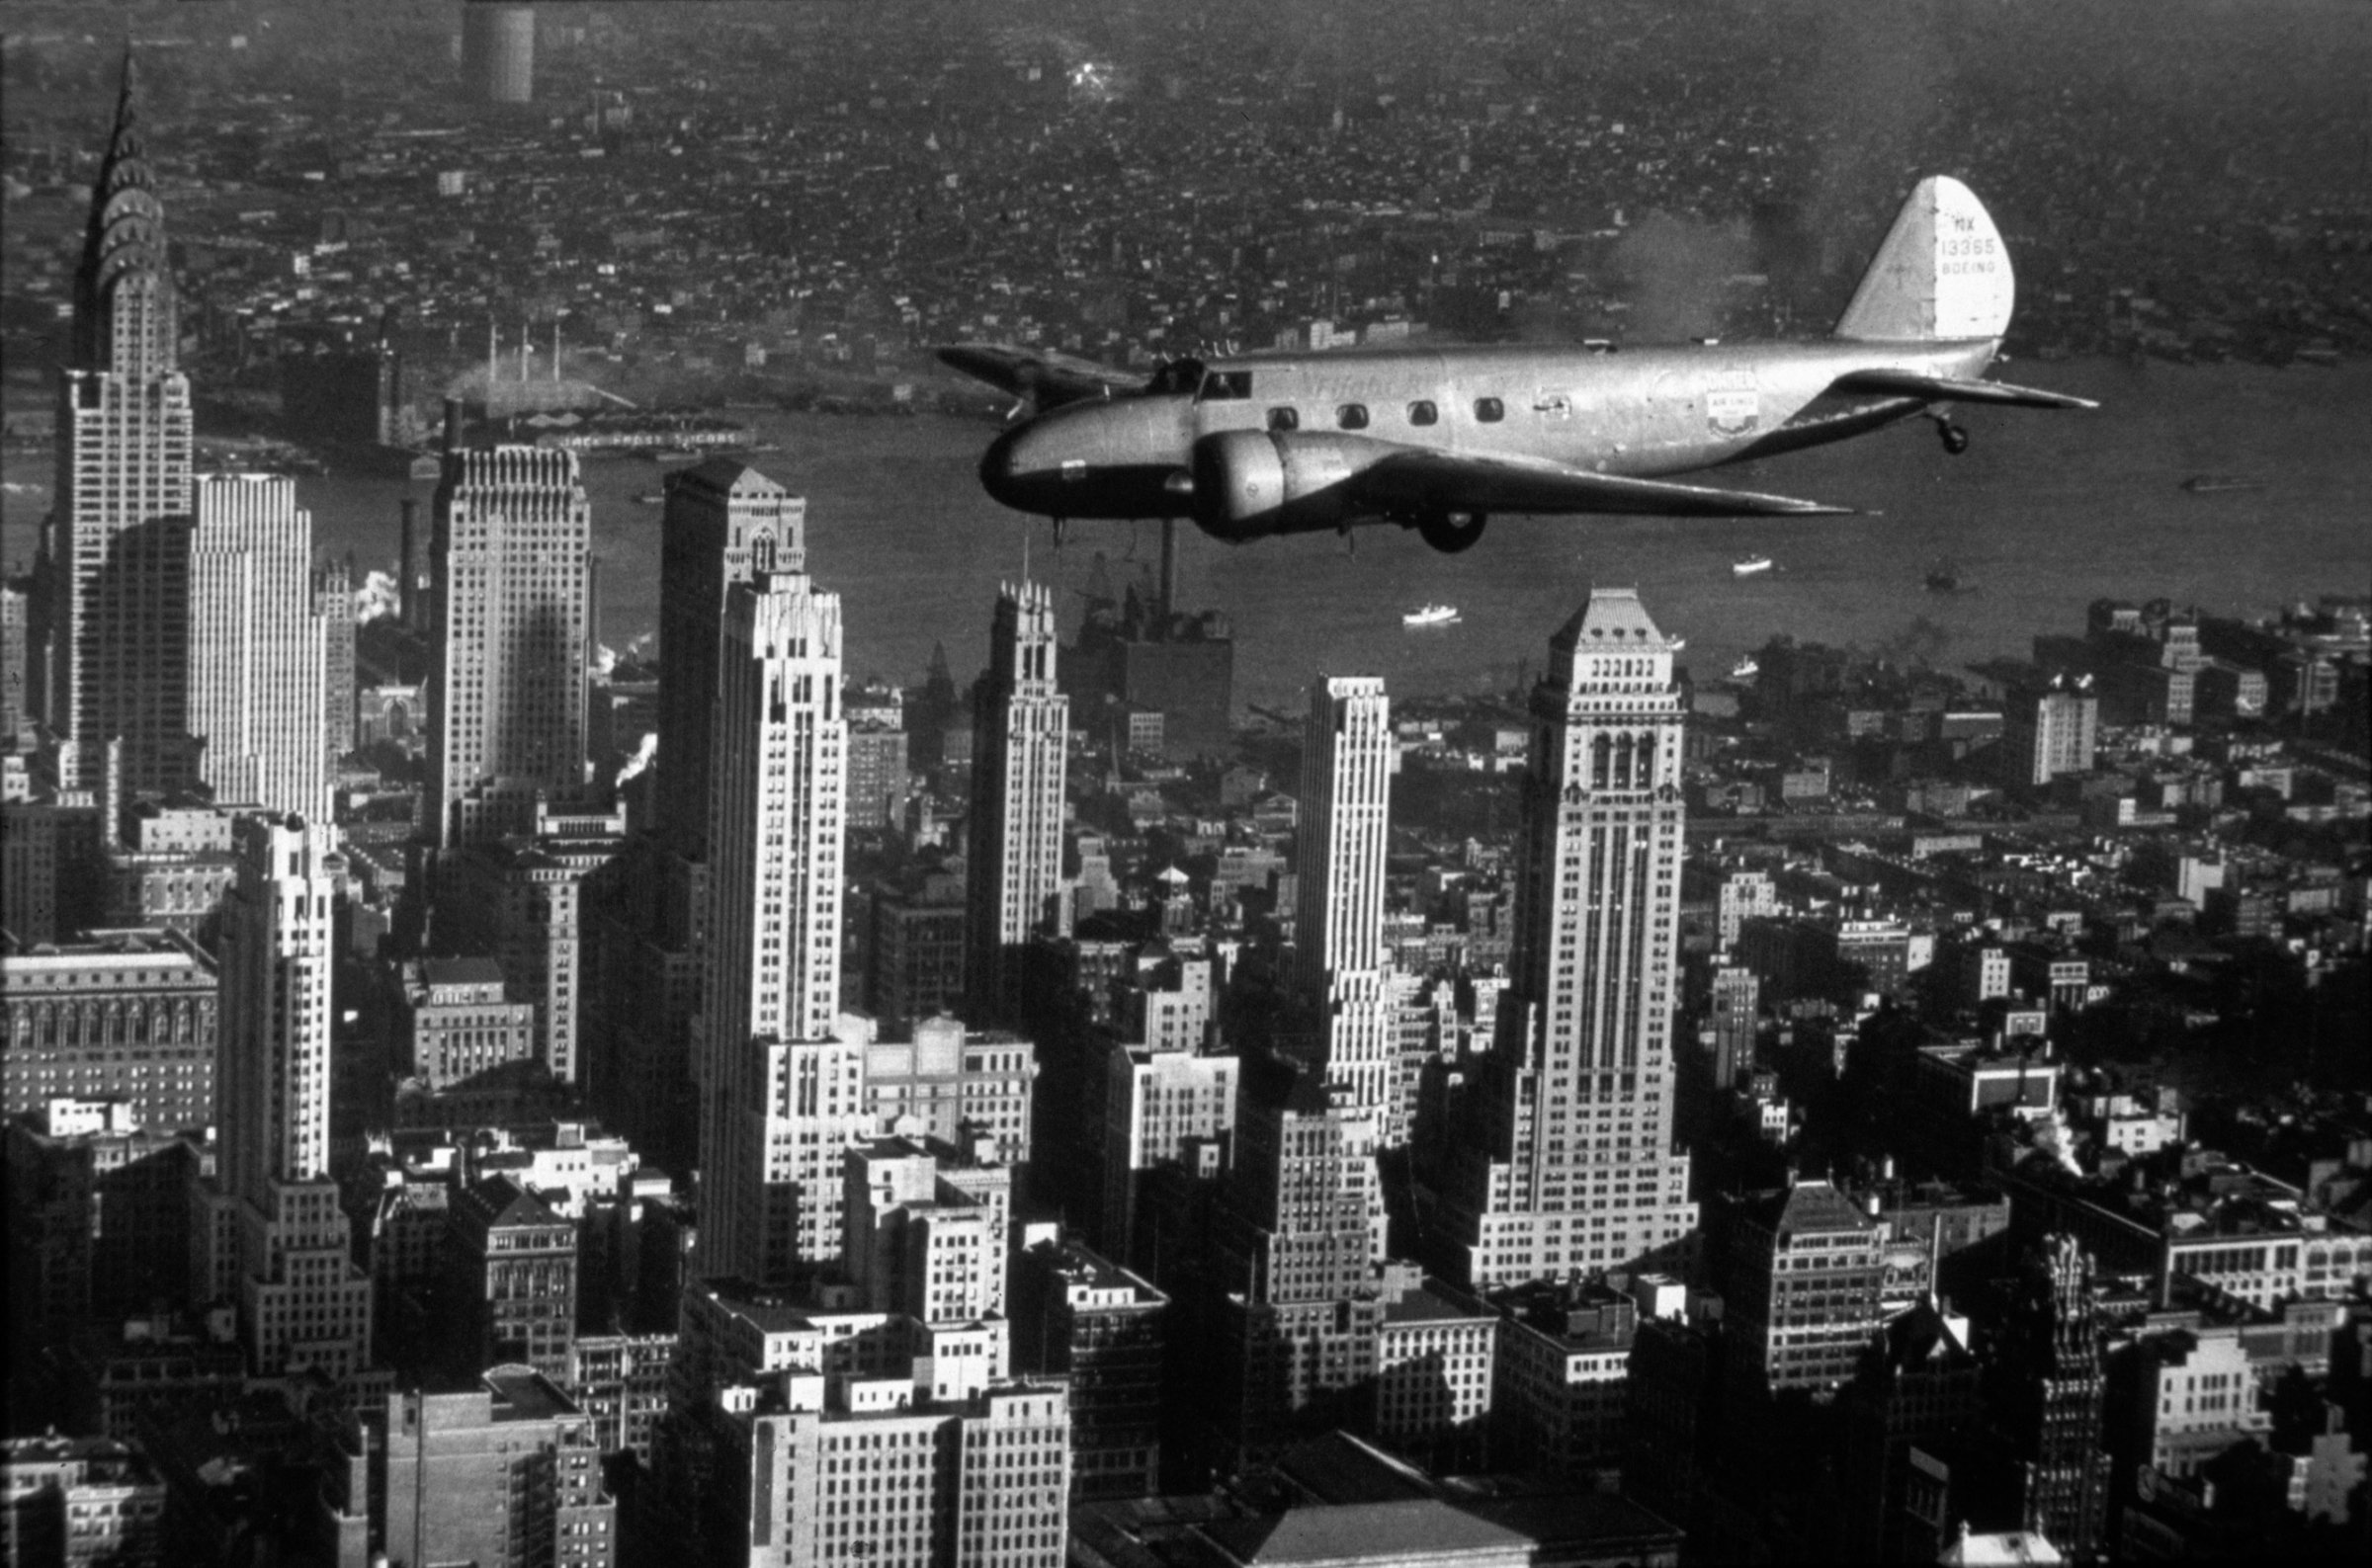 Boeing Model 247D in Flight over New York City